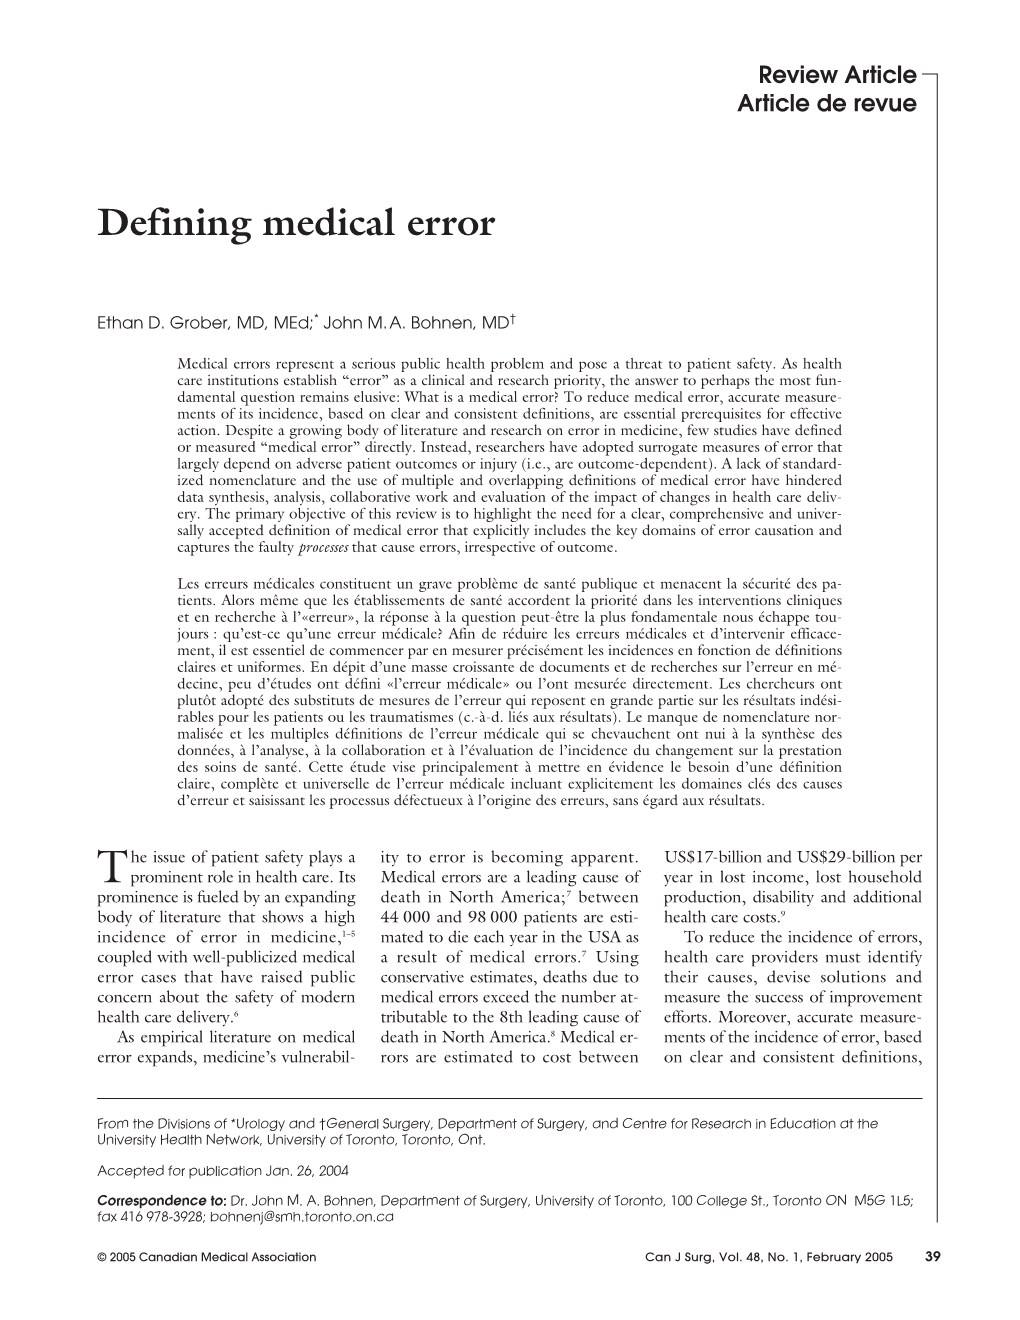 Defining Medical Error